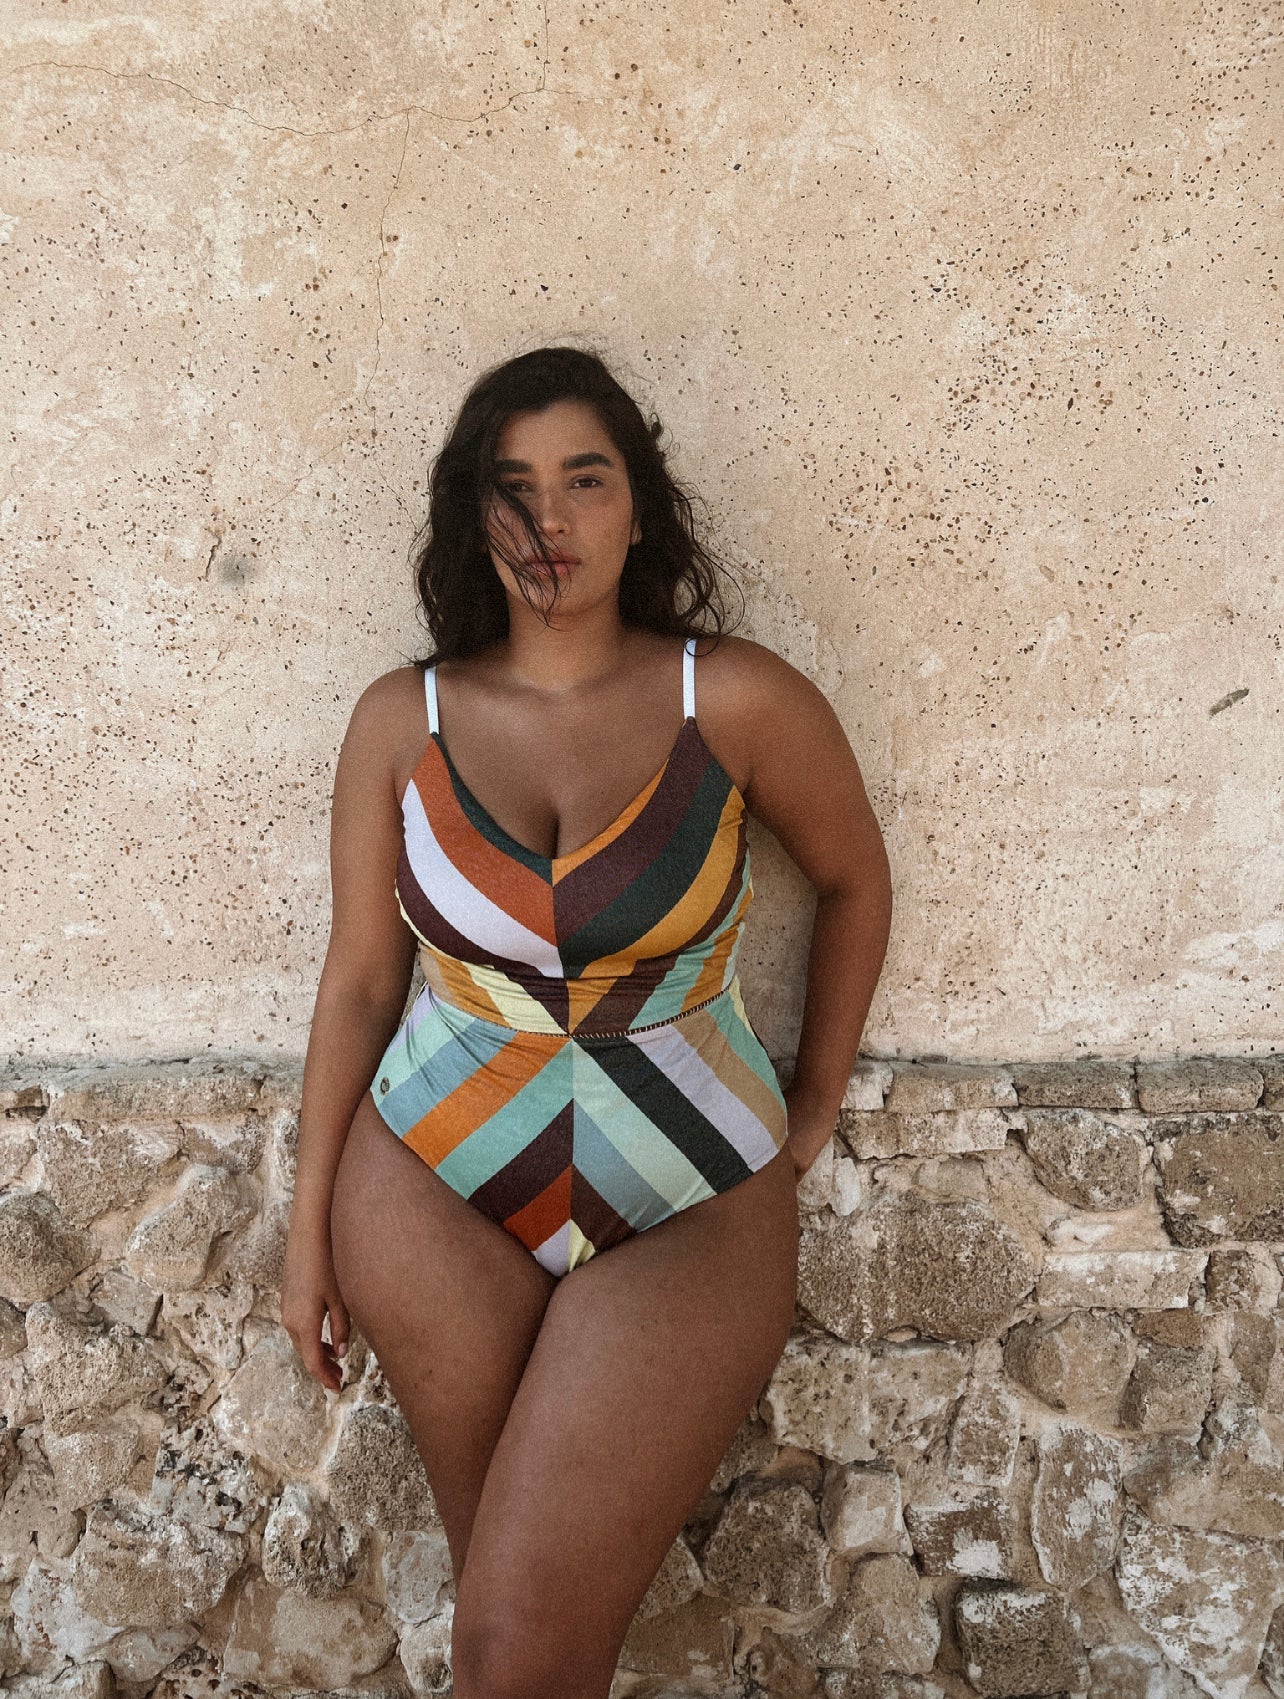 Arava 70S stripes - Colorful one piece - Plus size swimsuit